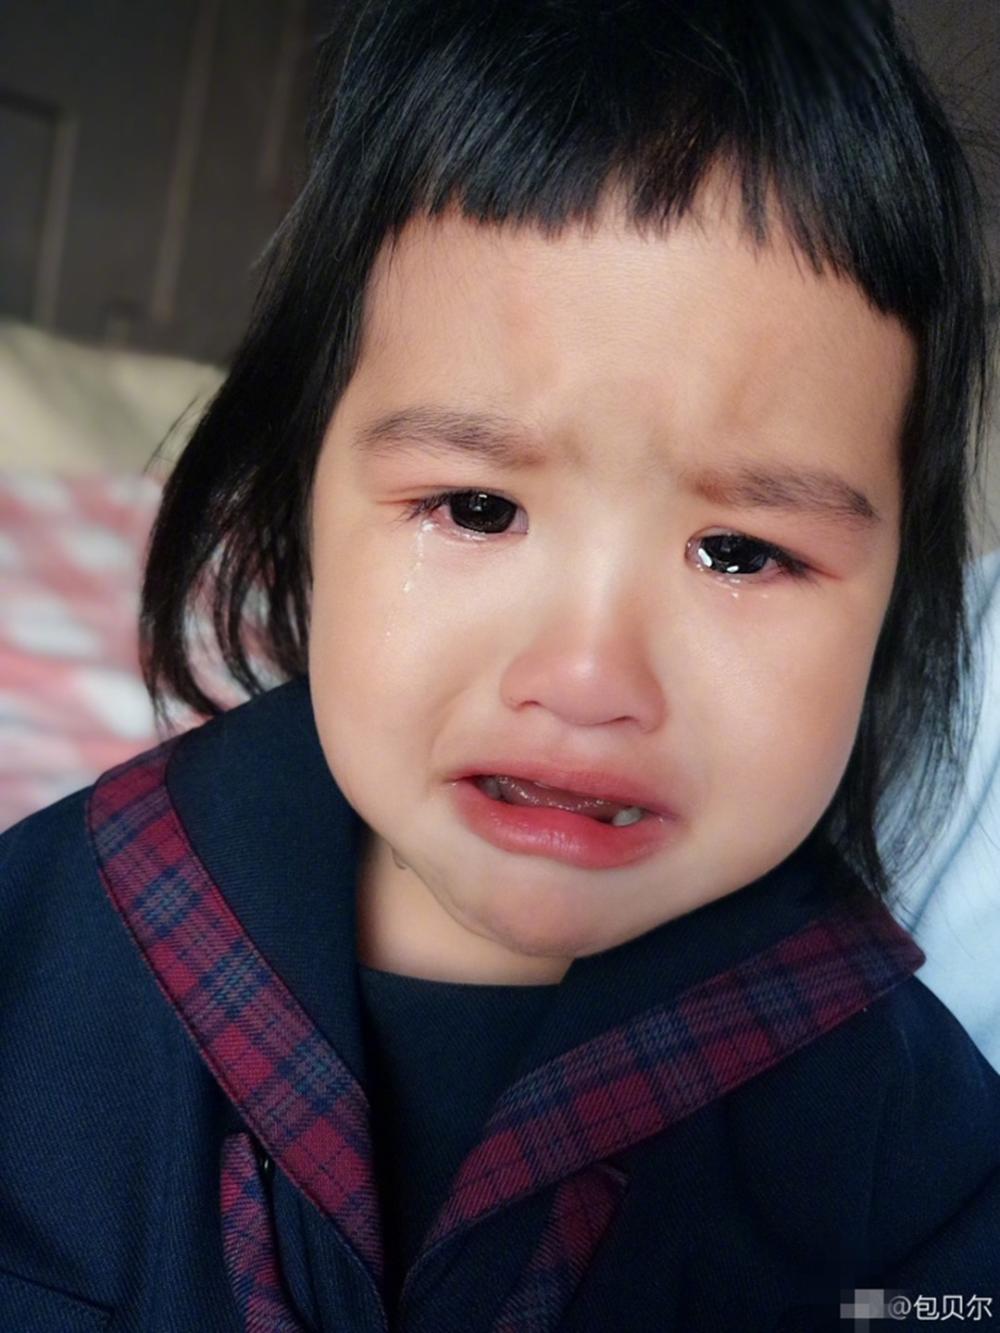 饺子泪流满面,真是发自内心的伤心啊.